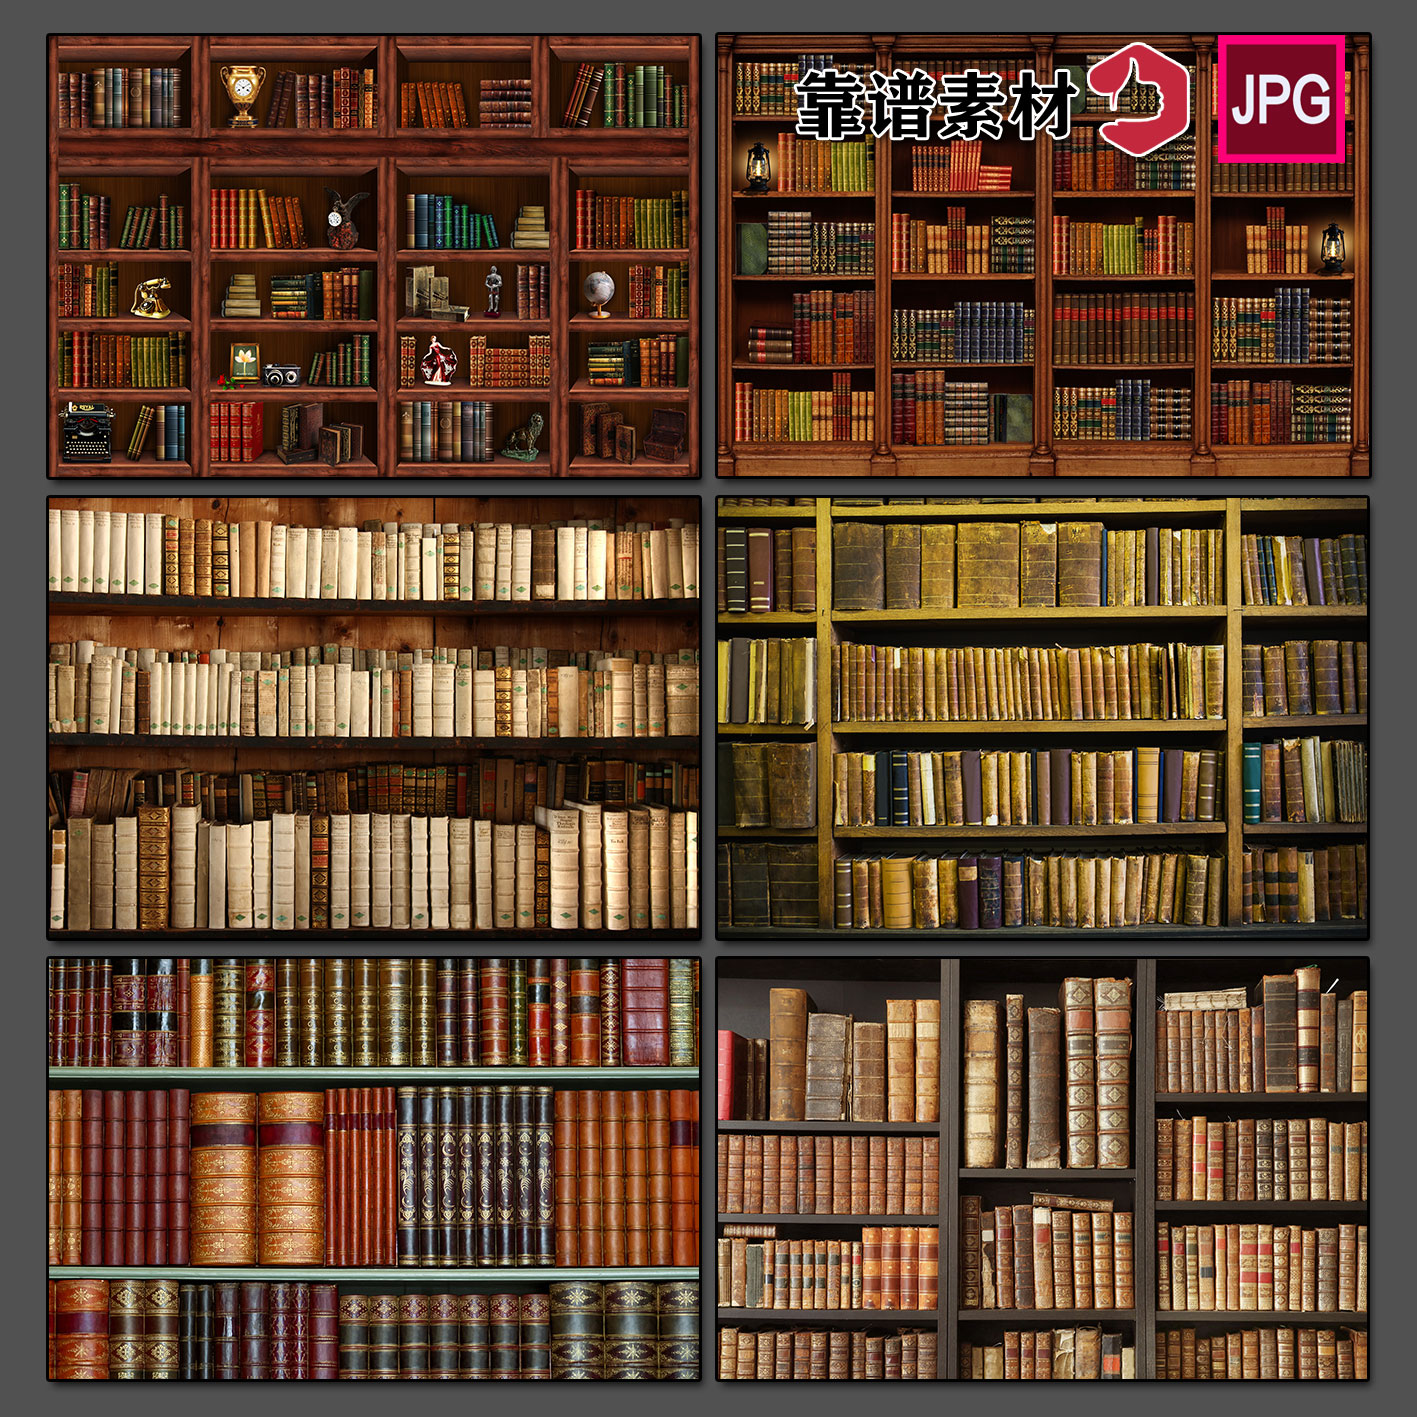 欧式经典馆藏书籍古典图书馆旧书架书柜背景墙高清图片设计素材